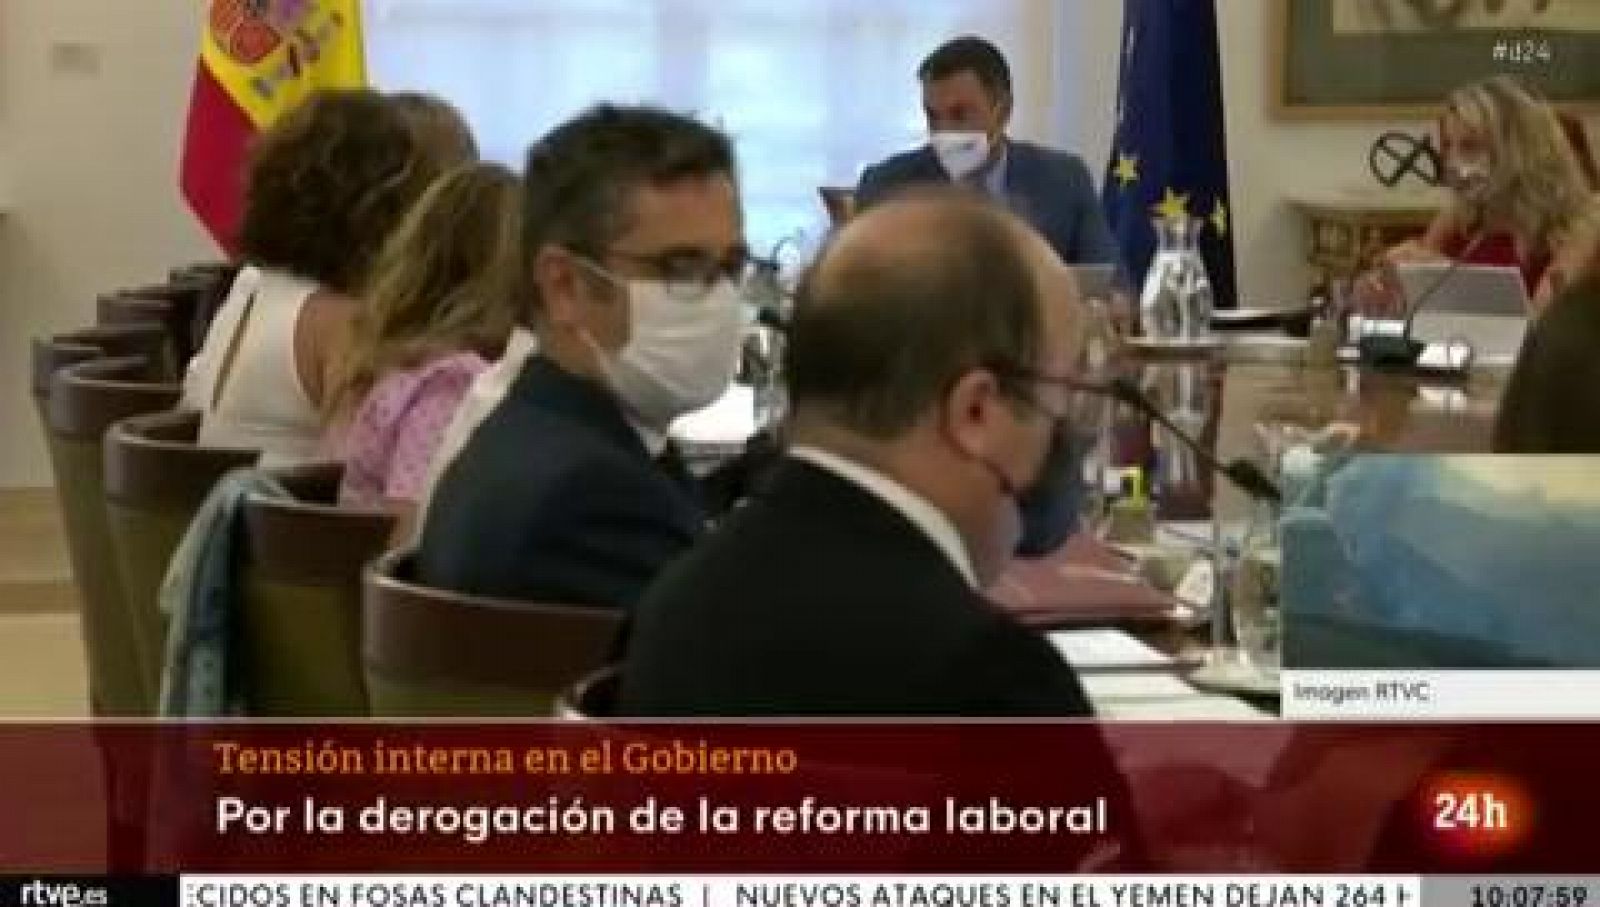 PSOE y UP se reúnen tras la crisis abierta en el Gobierno